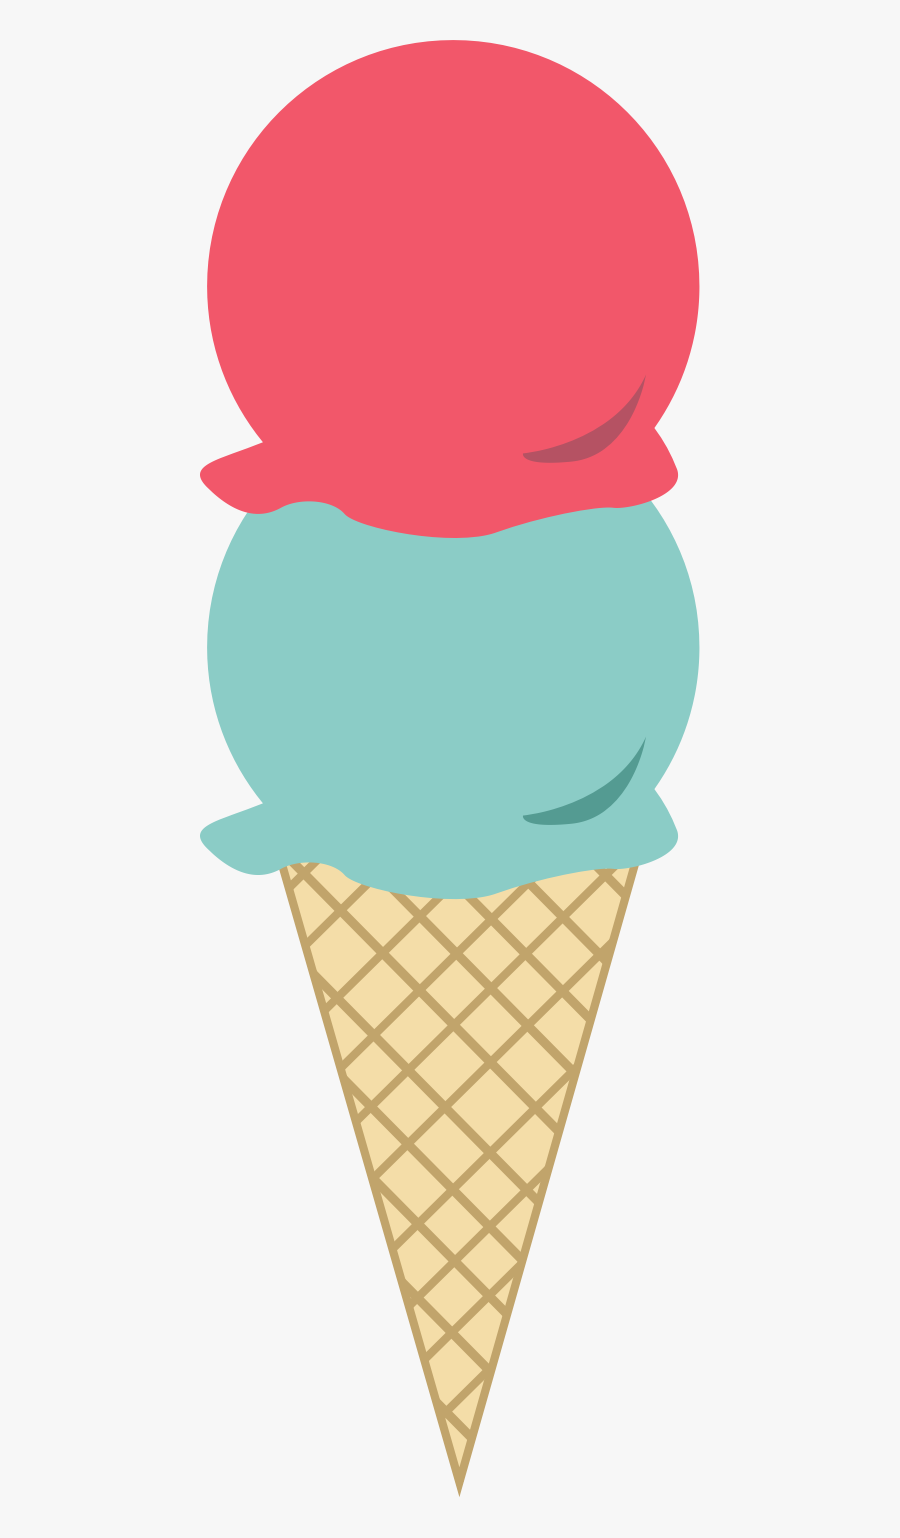 Clipart Ice Cream Cone - Clip Art Ice Cream Cone, Transparent Clipart